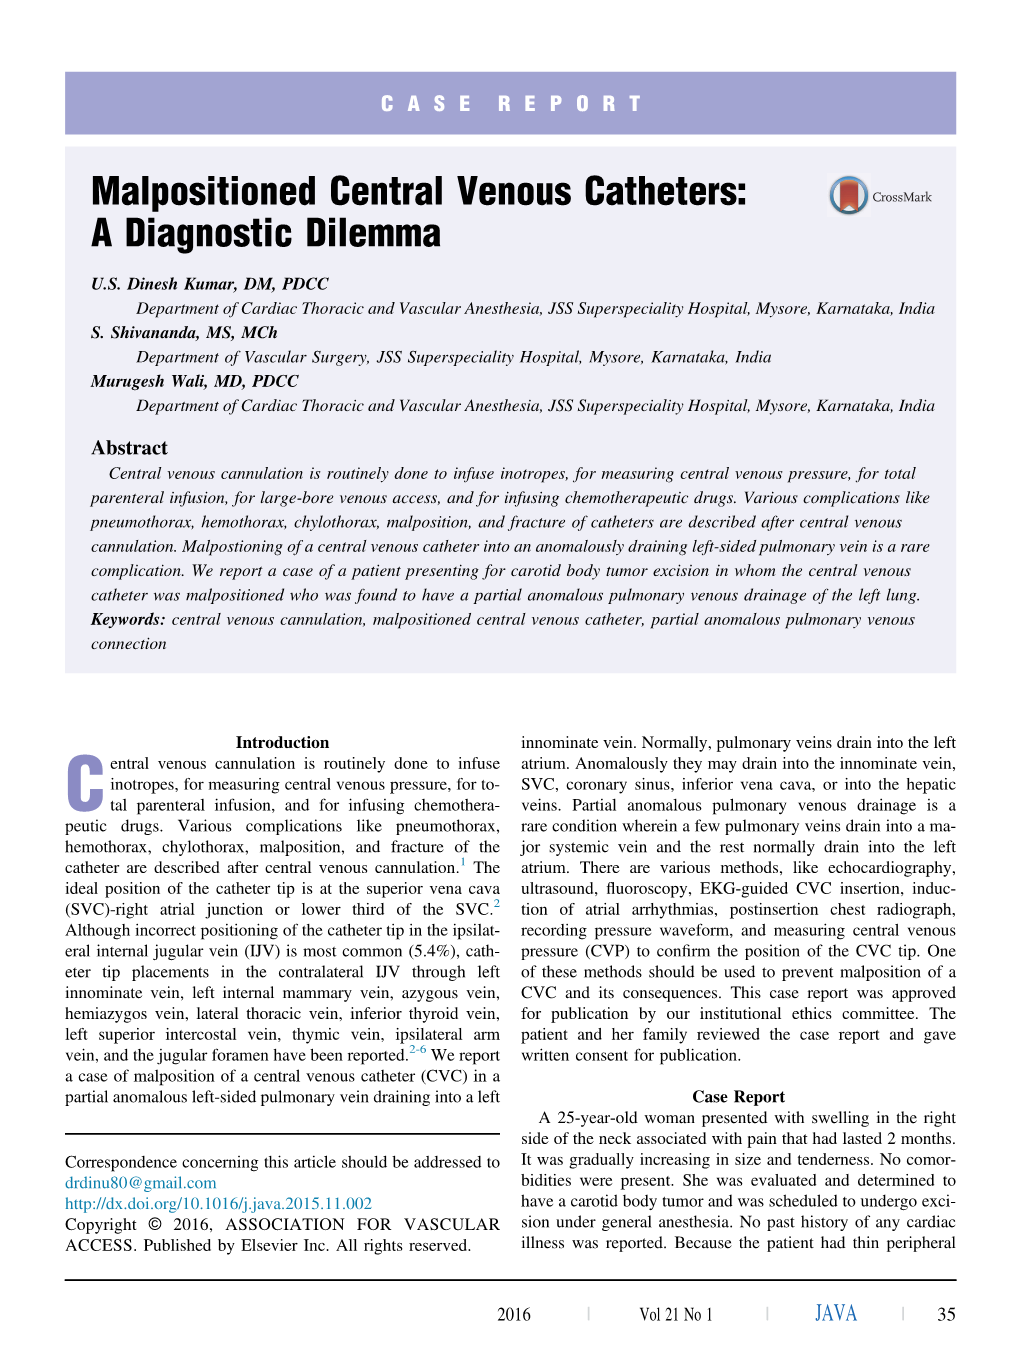 Malpositioned Central Venous Catheters: a Diagnostic Dilemma